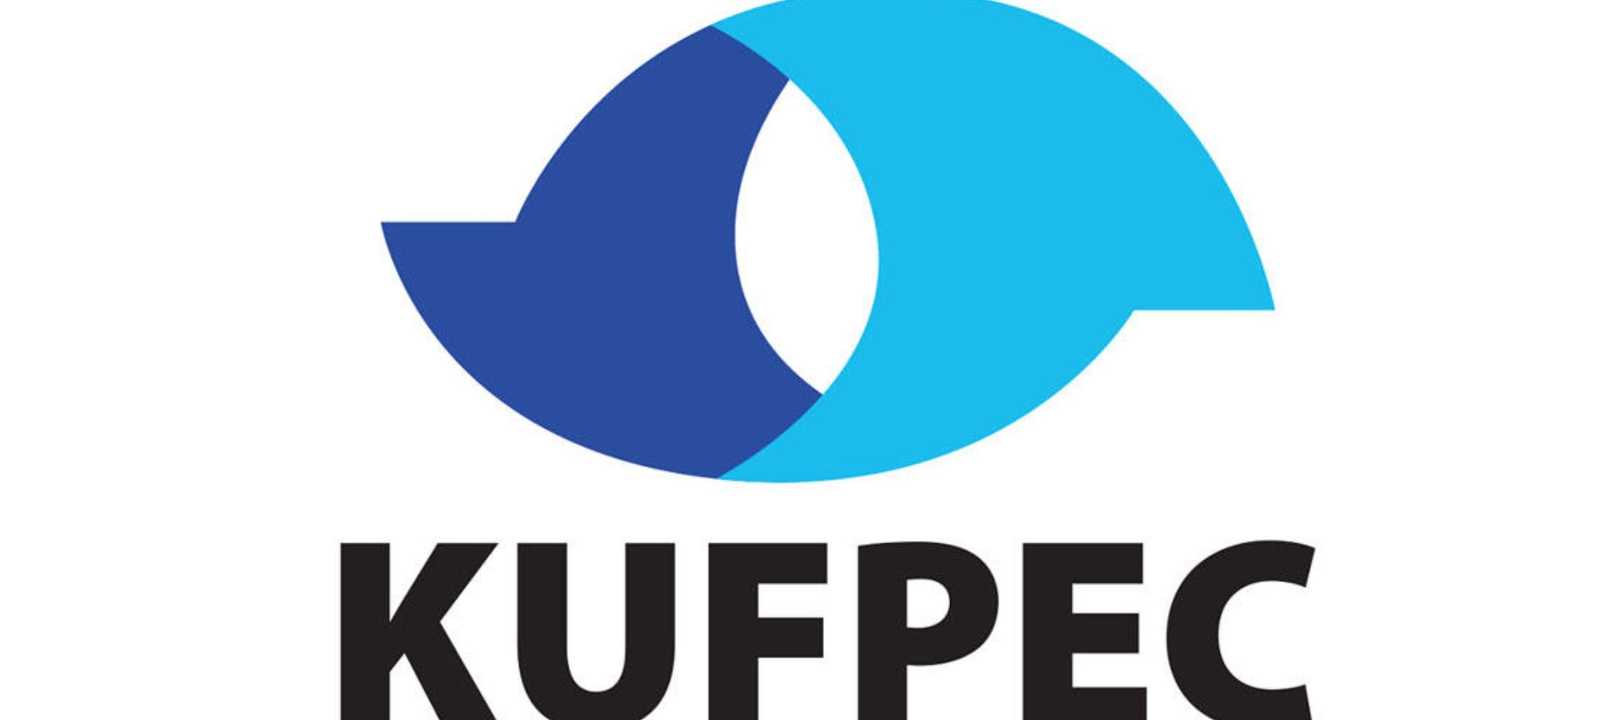 الشركة الكويتية للاستكشافات البترولية الخارجية "كوفبيك"